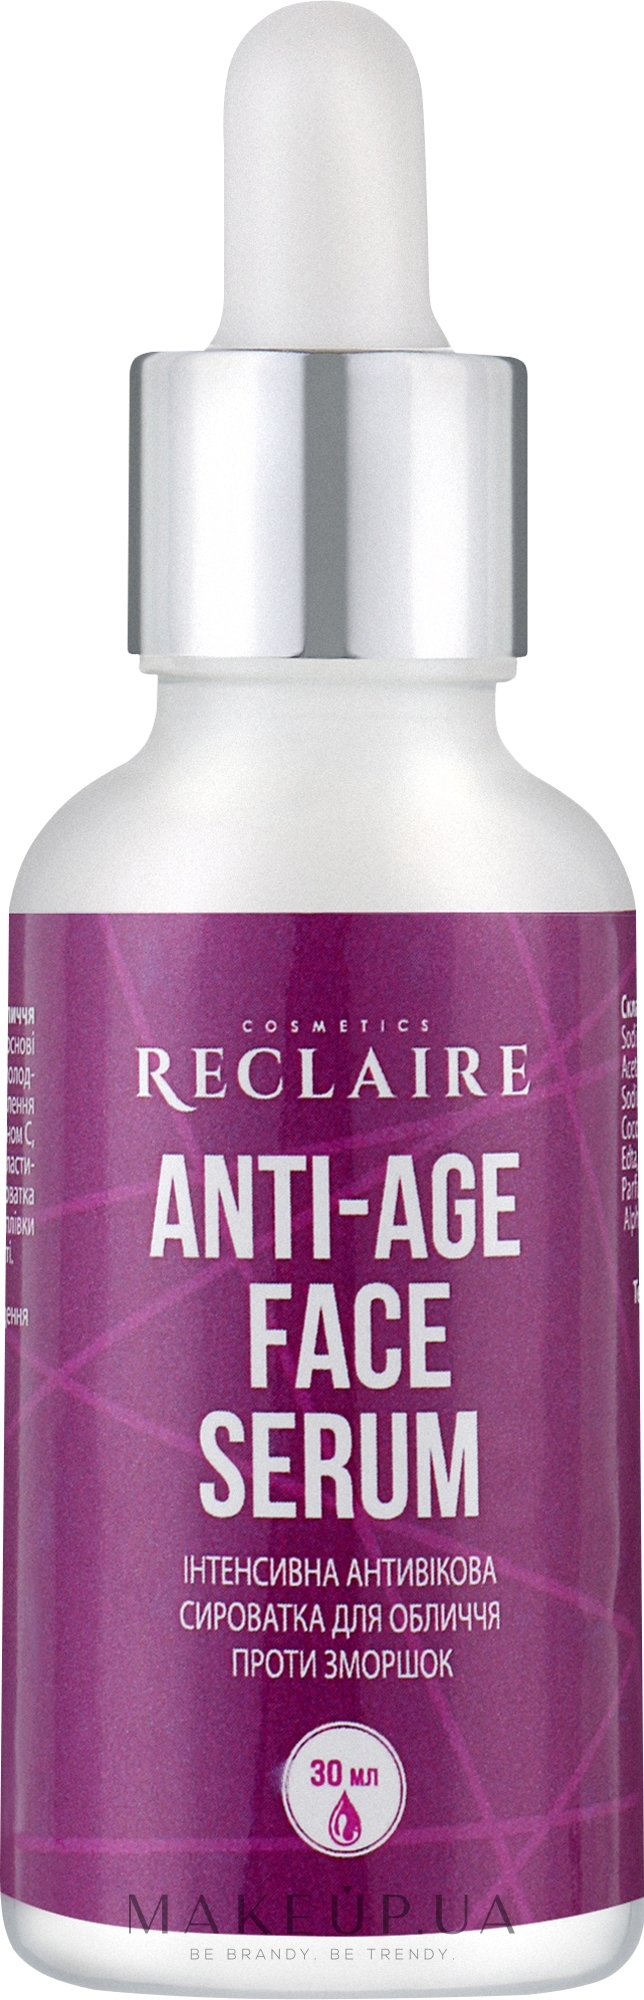 Інтенсивна антивікова сироватка для обличчя проти зморщок - Reclaire Anti-Age Face Serum — фото 30ml